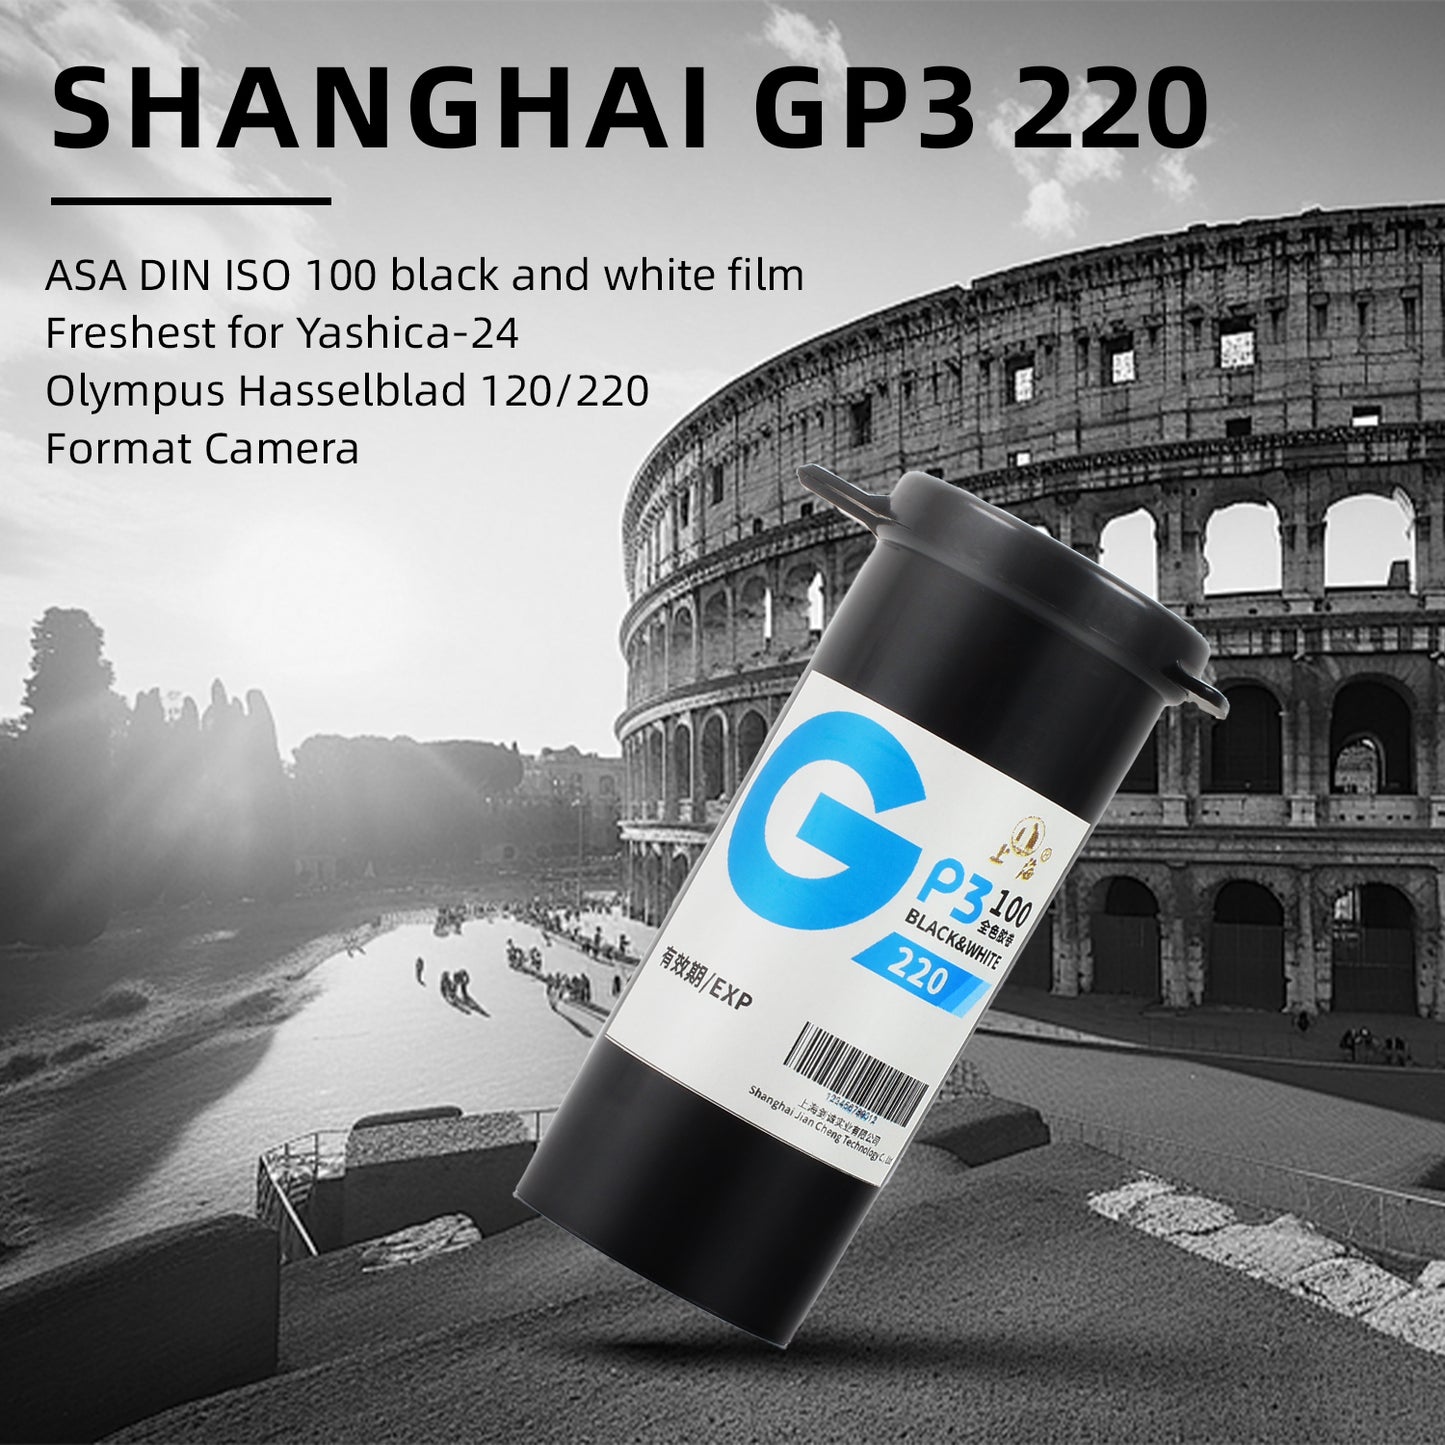 Shanghai GP3 220 Schwarz-Weiß-Rollfilm ASA DIN ISO 100 S/W Negativ 10-2023 Frischeste für Yashica-24 Olympus Hasselblad 120/220 Formatkamera